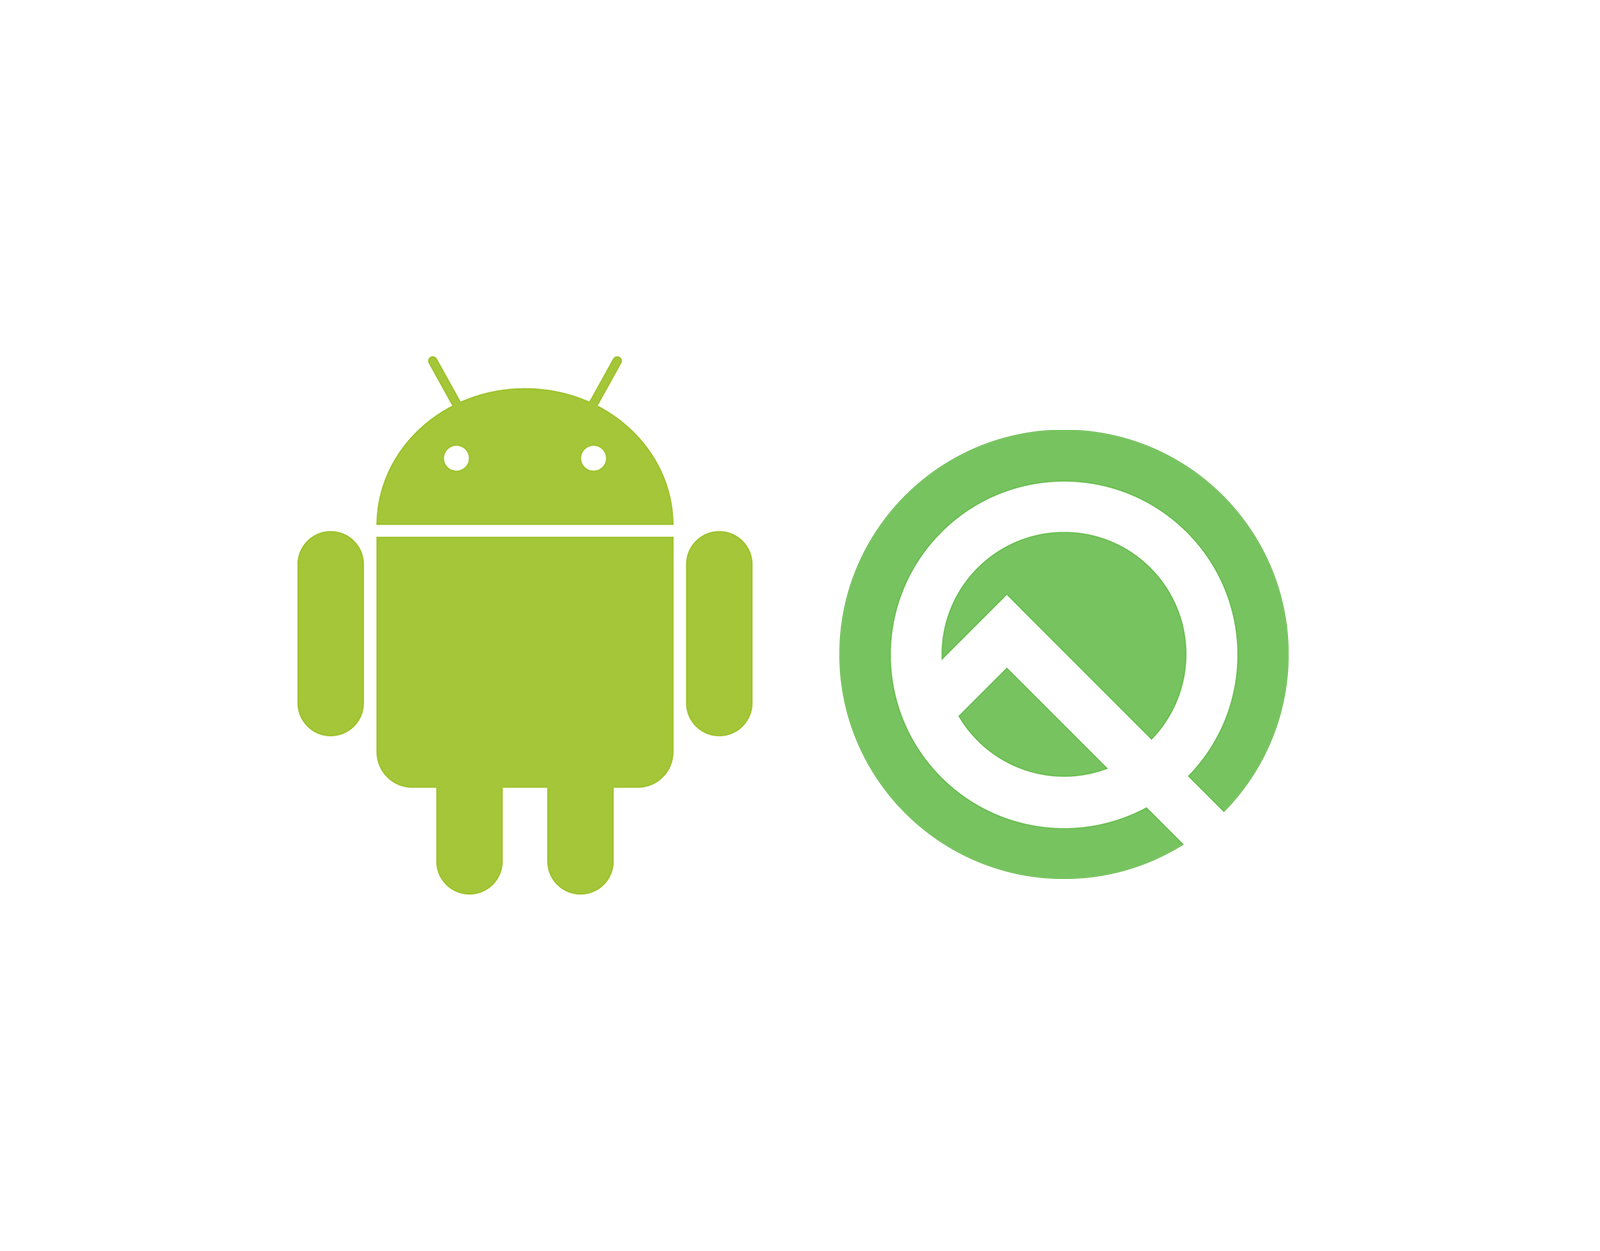 Pratinjau pengembang Android 10 Q tersedia sebagai pembaruan Over-the-Air untuk Nokia 8.1